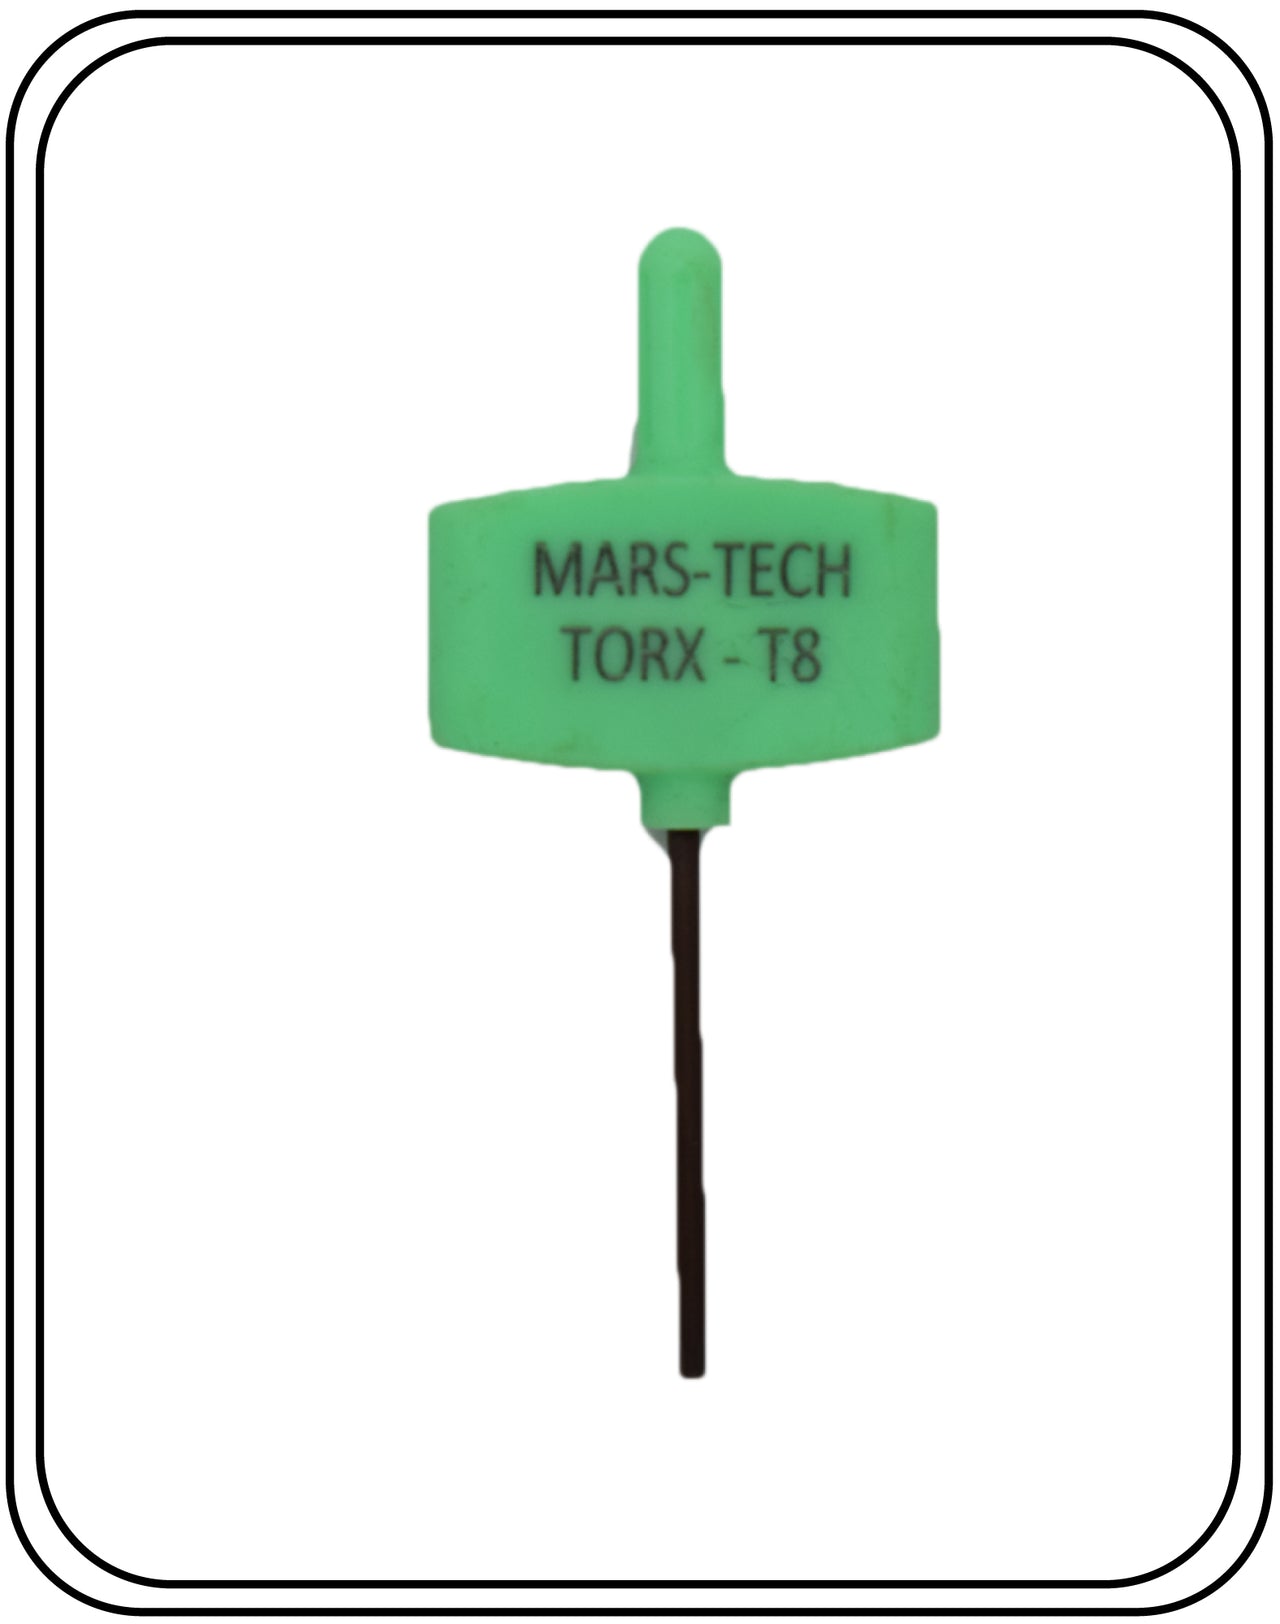 Mars-Tech Torx Key T8